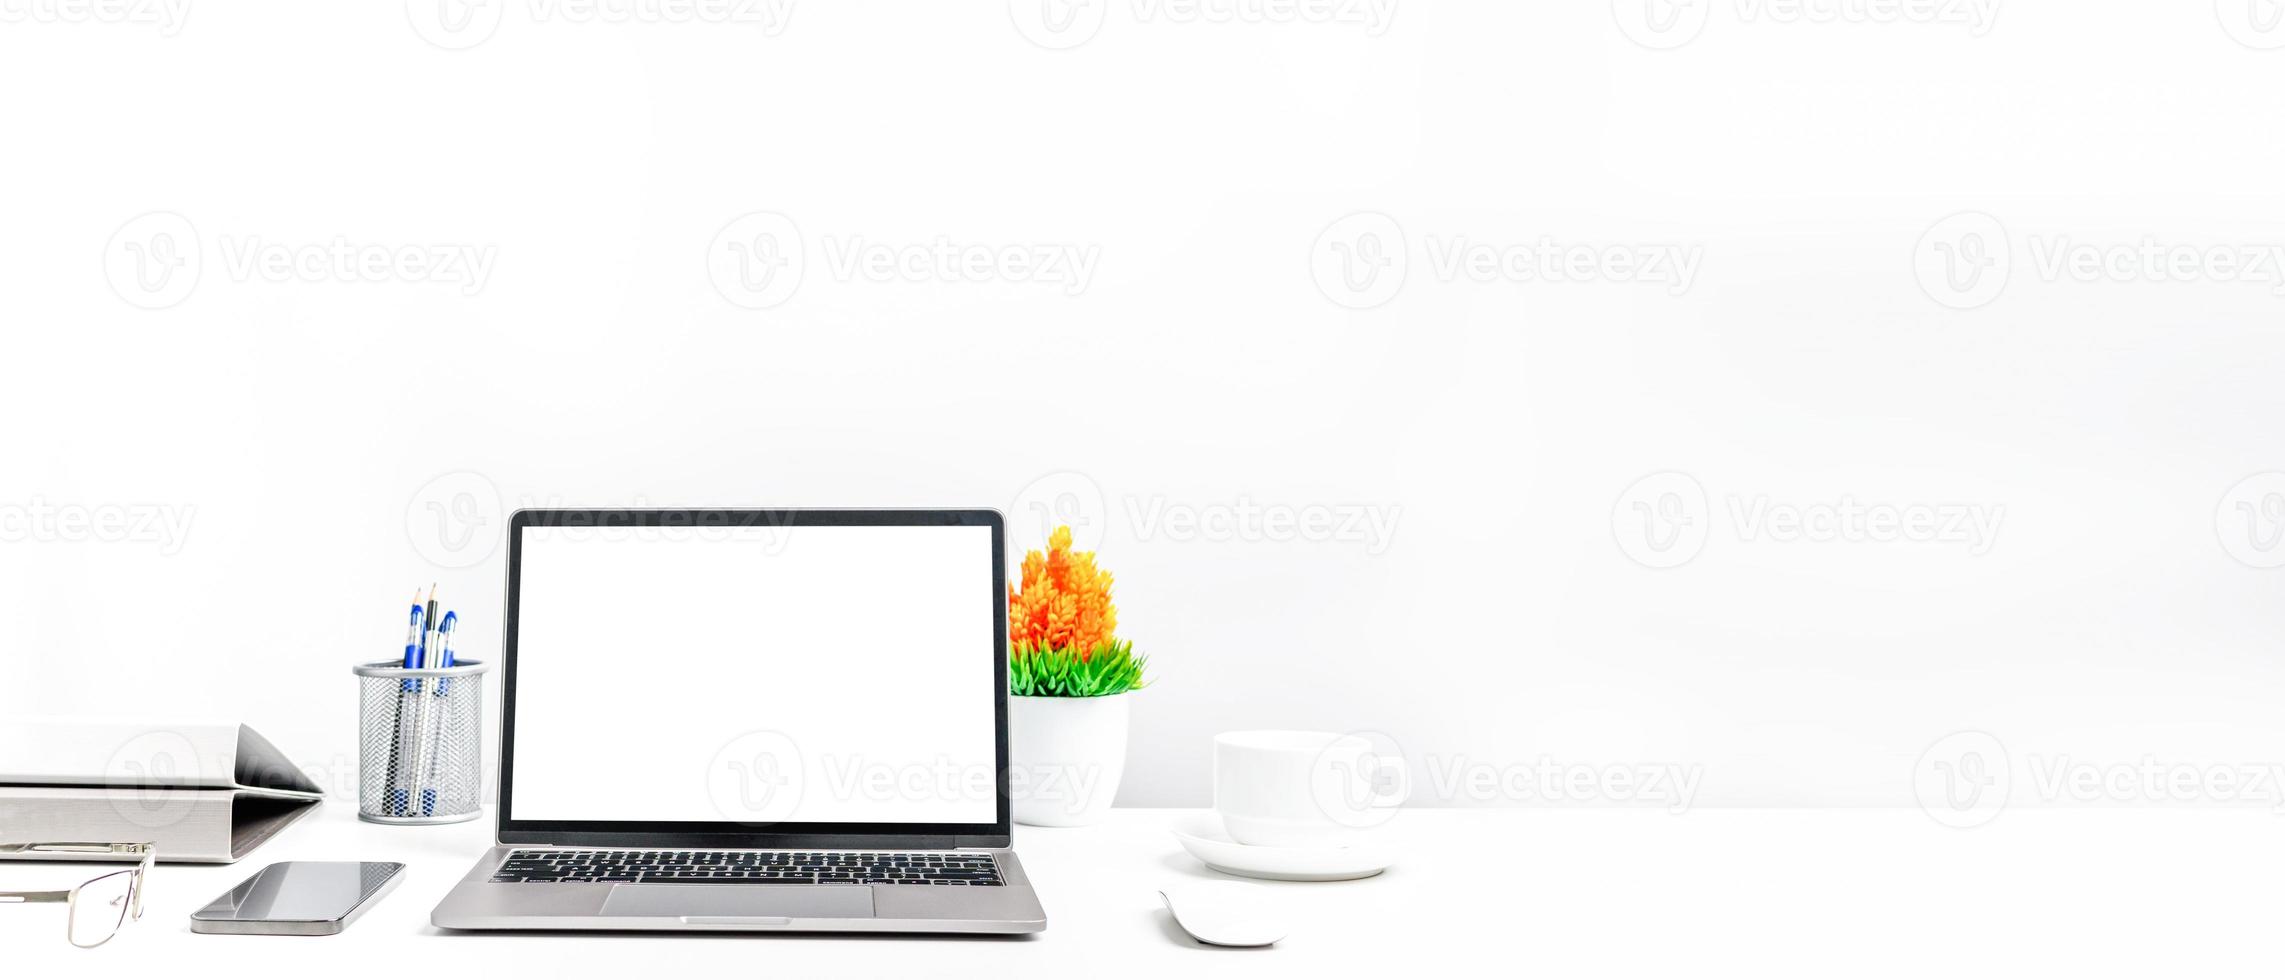 en bärbar dator är en tom vit skärm på ett bord på ett kontor. koncept som arbetar med teknik smartphones, anteckningsbok, kaffekopp. kopiera utrymme till höger för design eller text, närbild, grå och oskärpa bakgrund foto